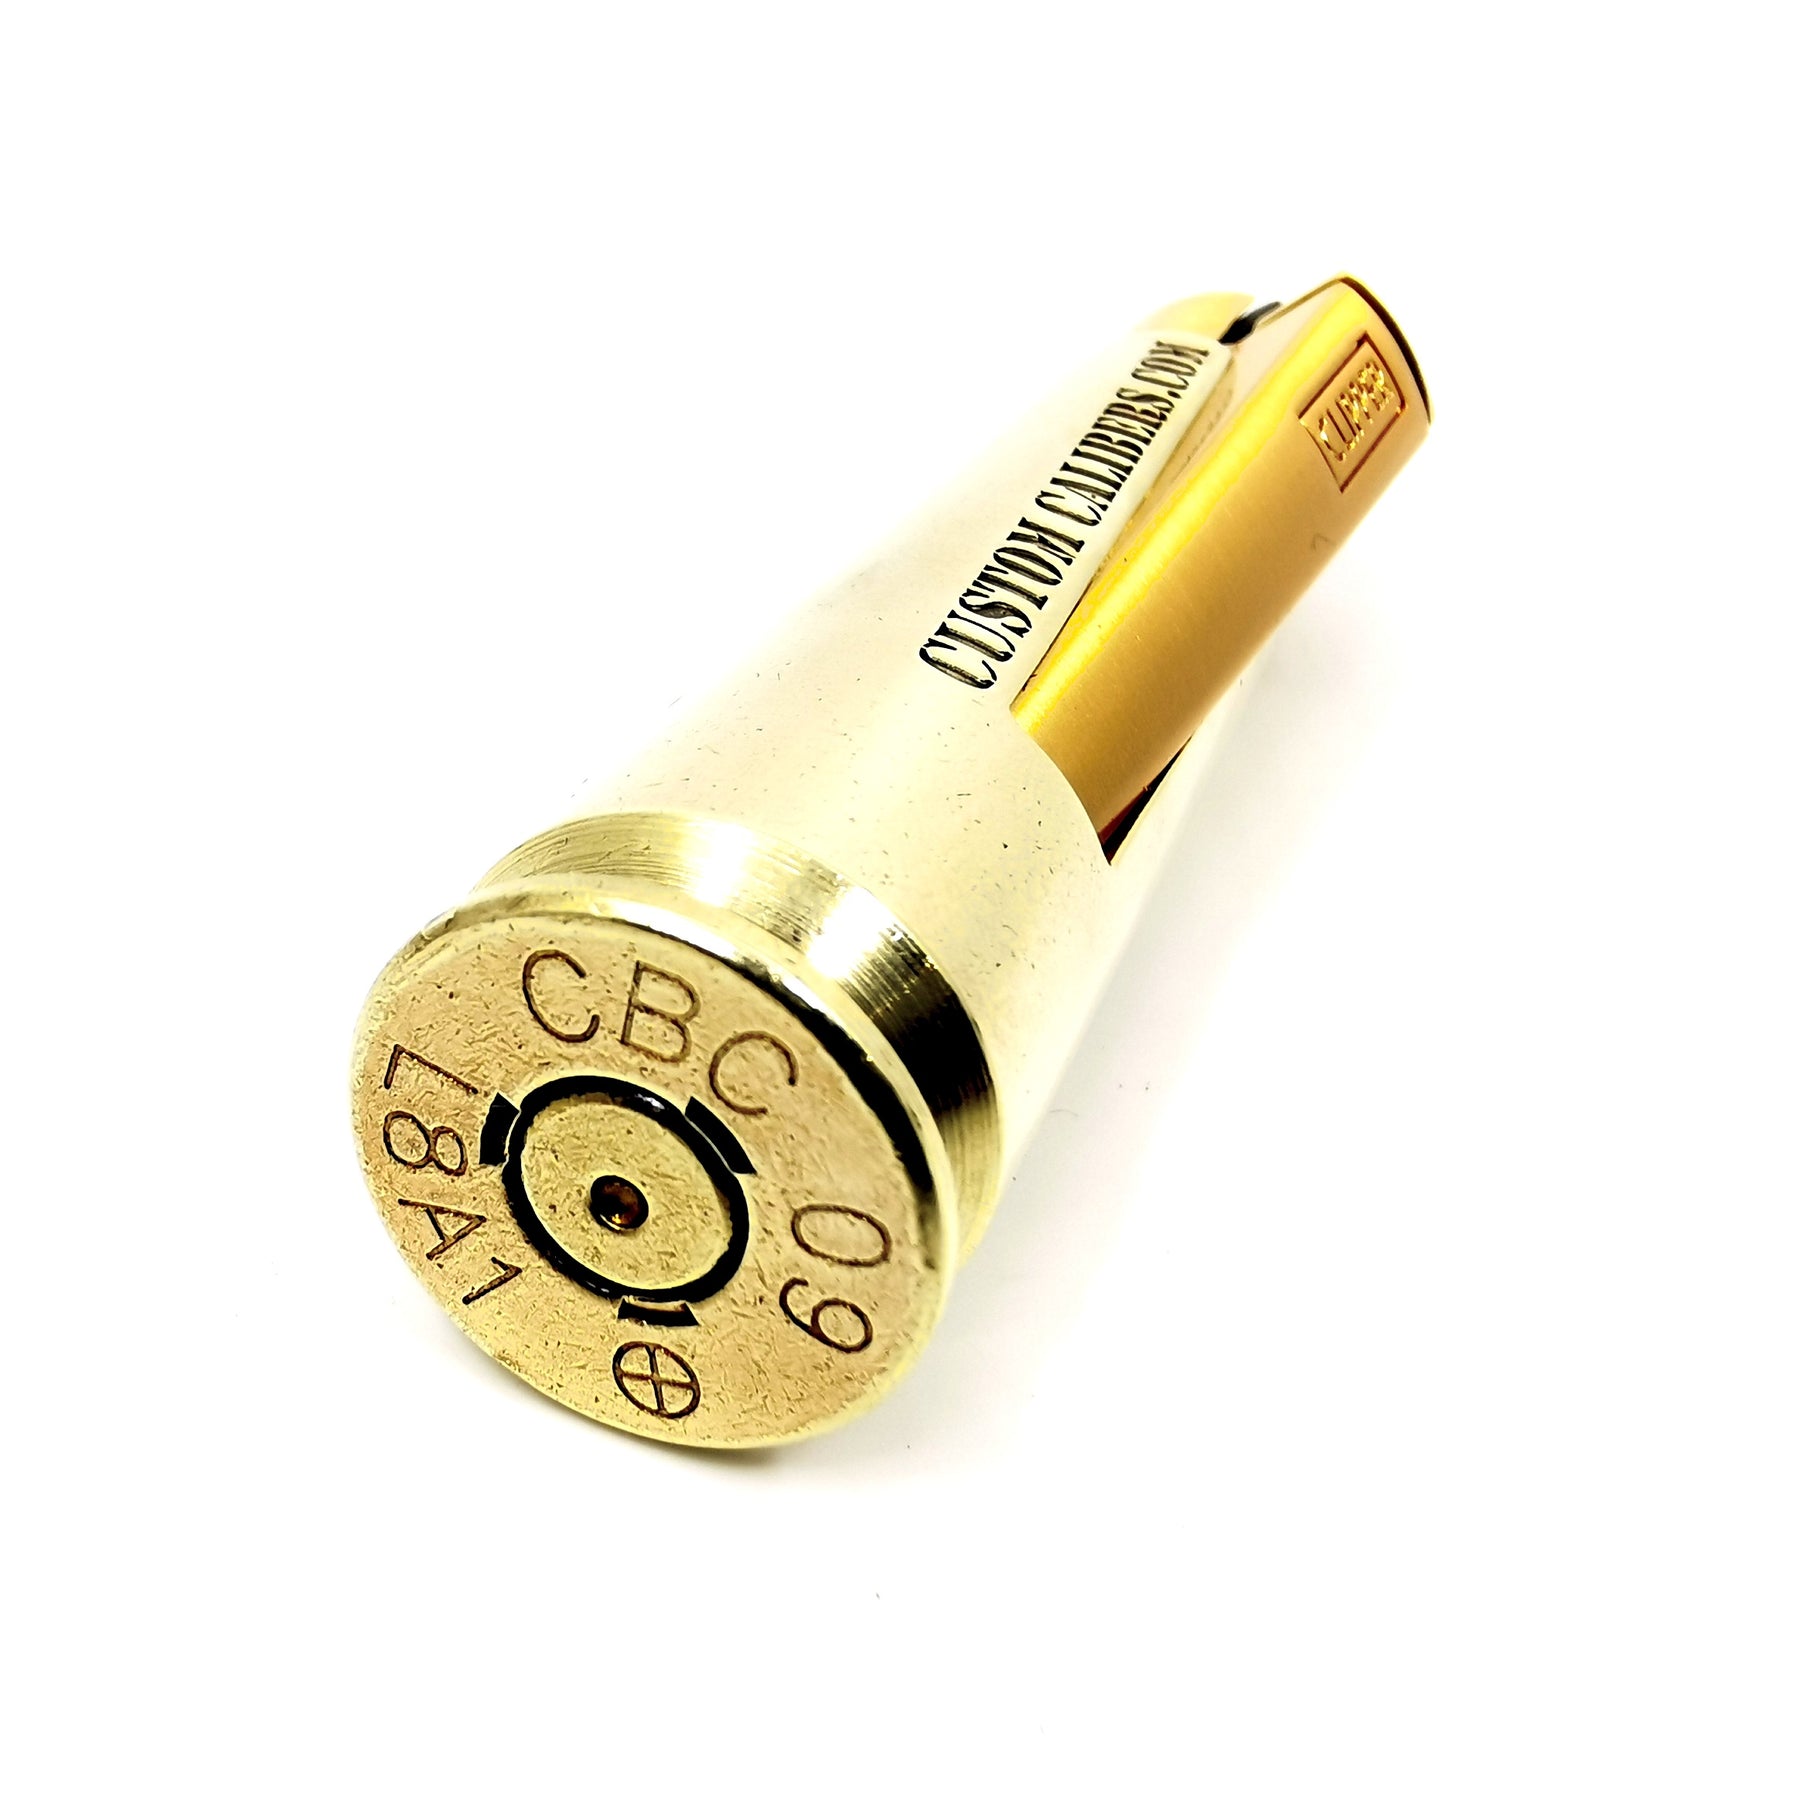 .50 Cal Bullet Lighter